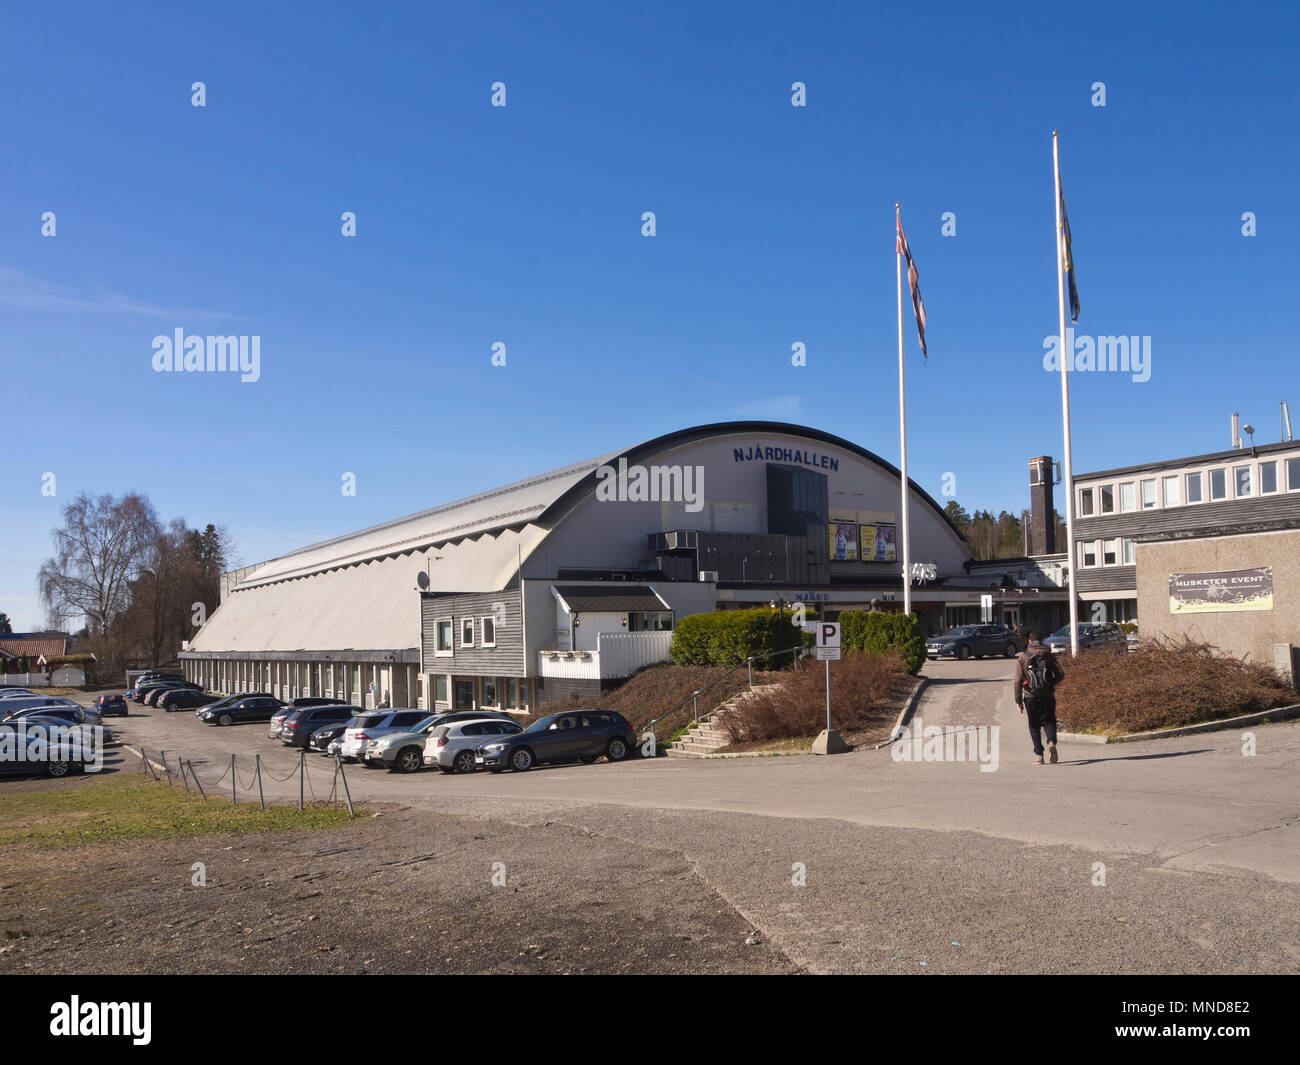 Njårdhallen,un'arena sportiva al coperto nei sobborghi occidentali di Oslo Norvegia, usato per essere un concerto arena come pozzo costruito ca 1960 Foto Stock